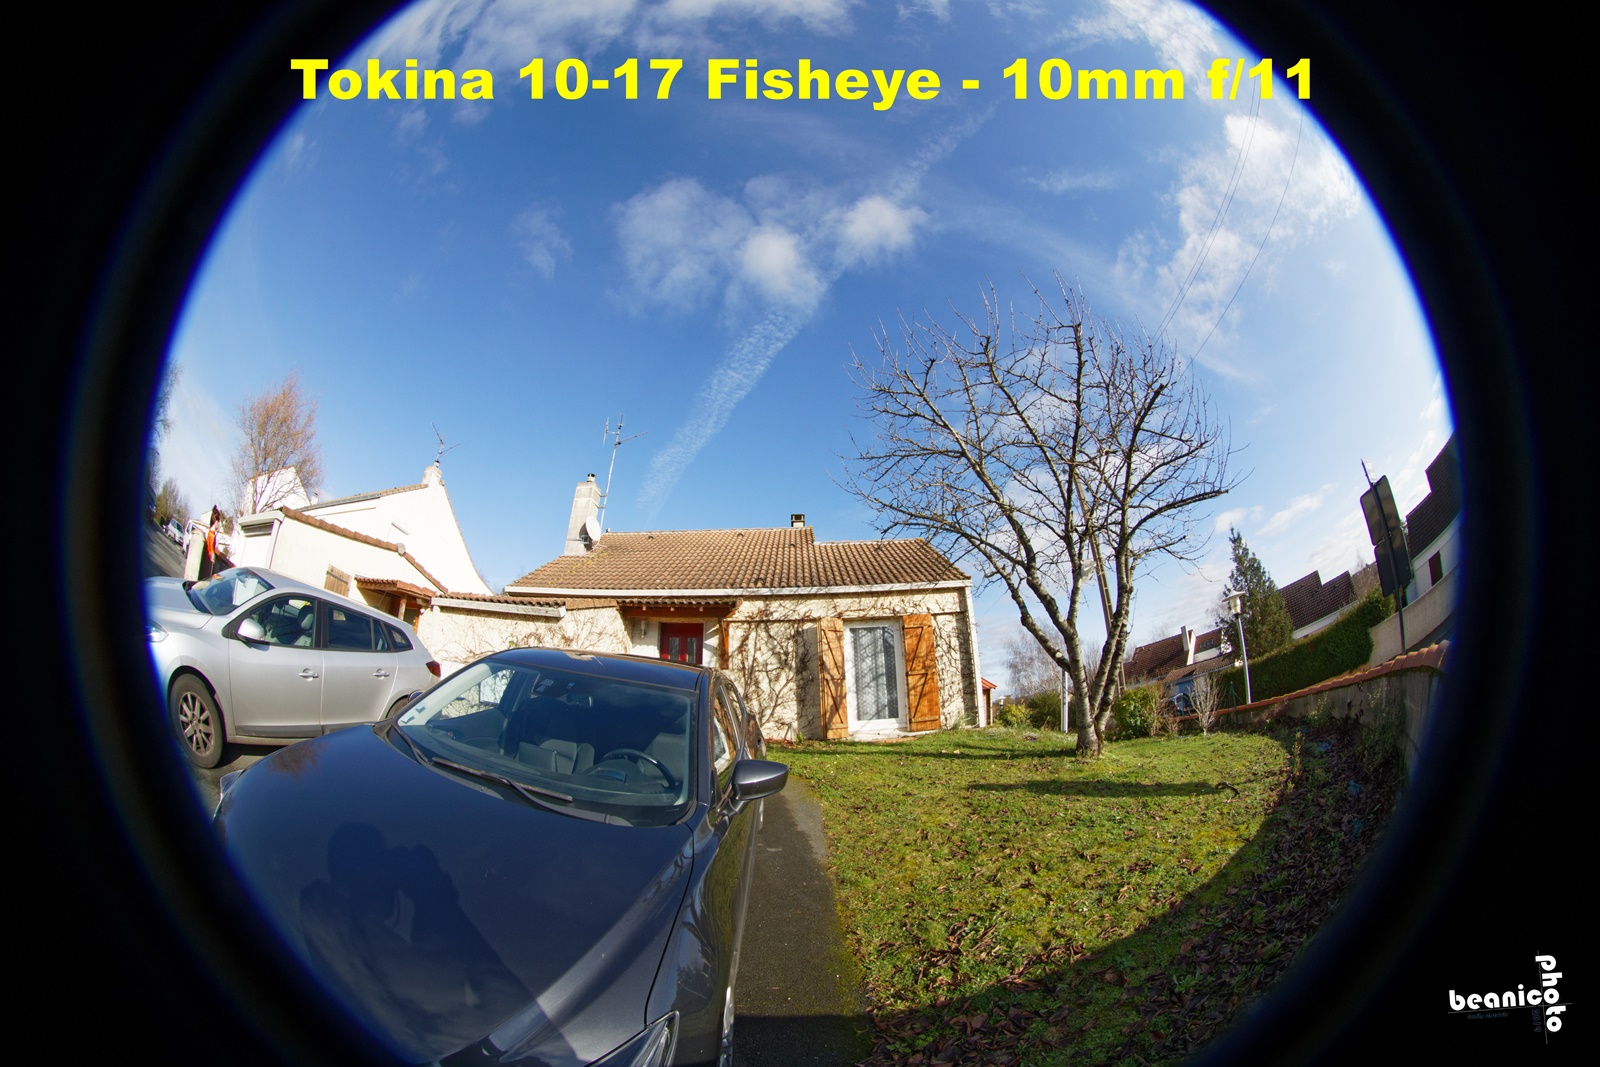 www.beanico-photo.fr - test du Tokina Fisheye 10-17mm